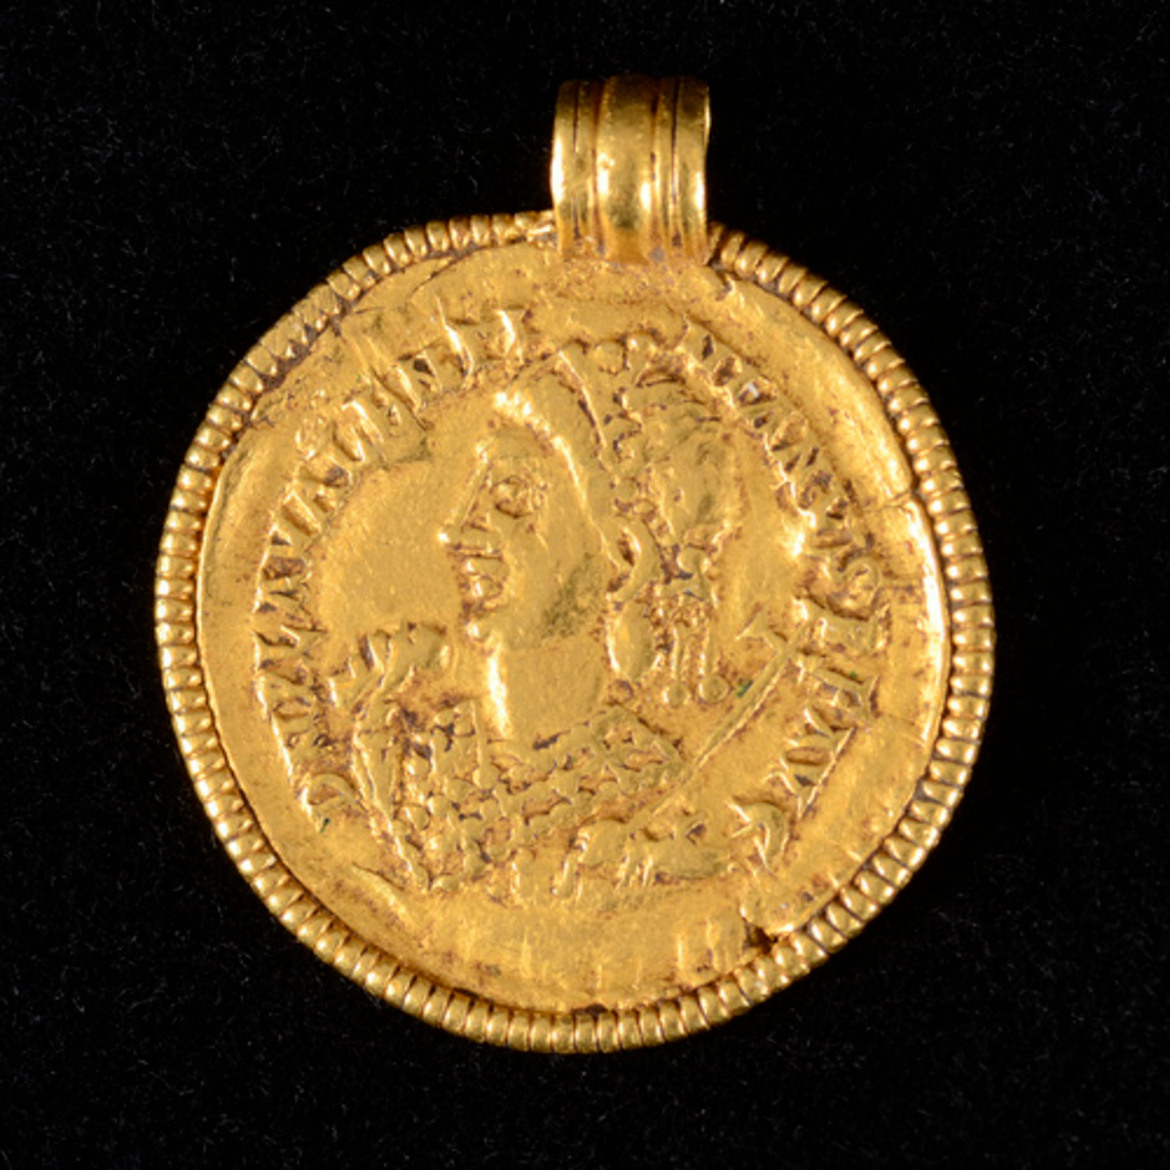 Ett guldmynt med hängögla. En person i profil syns på myntet.